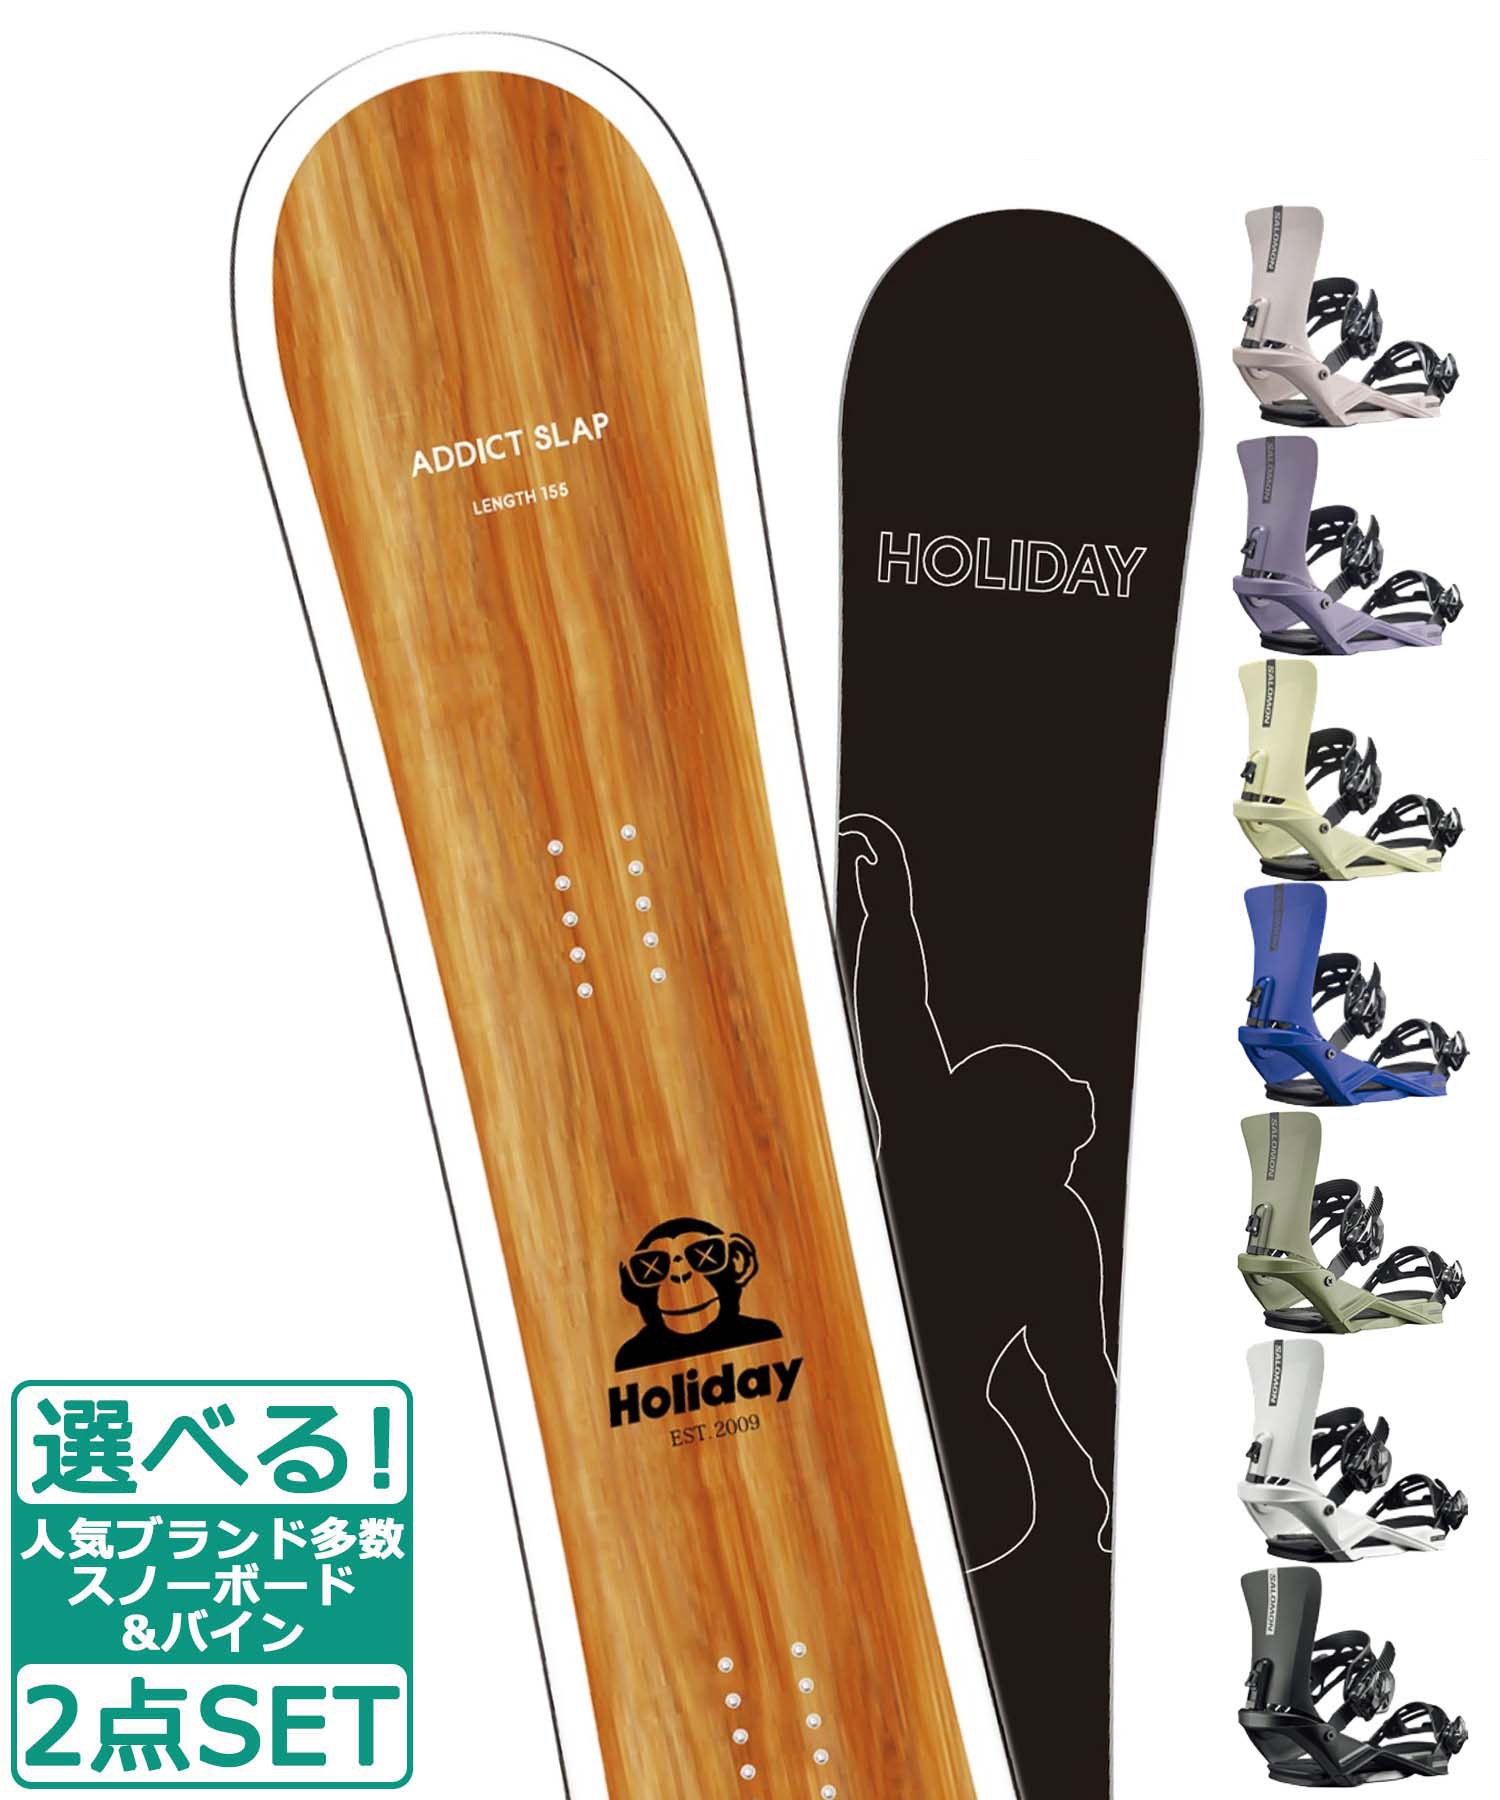 スポーツ/アウトドア【初心者おすすめ 】 SALOMON スノーボードセット 143cm